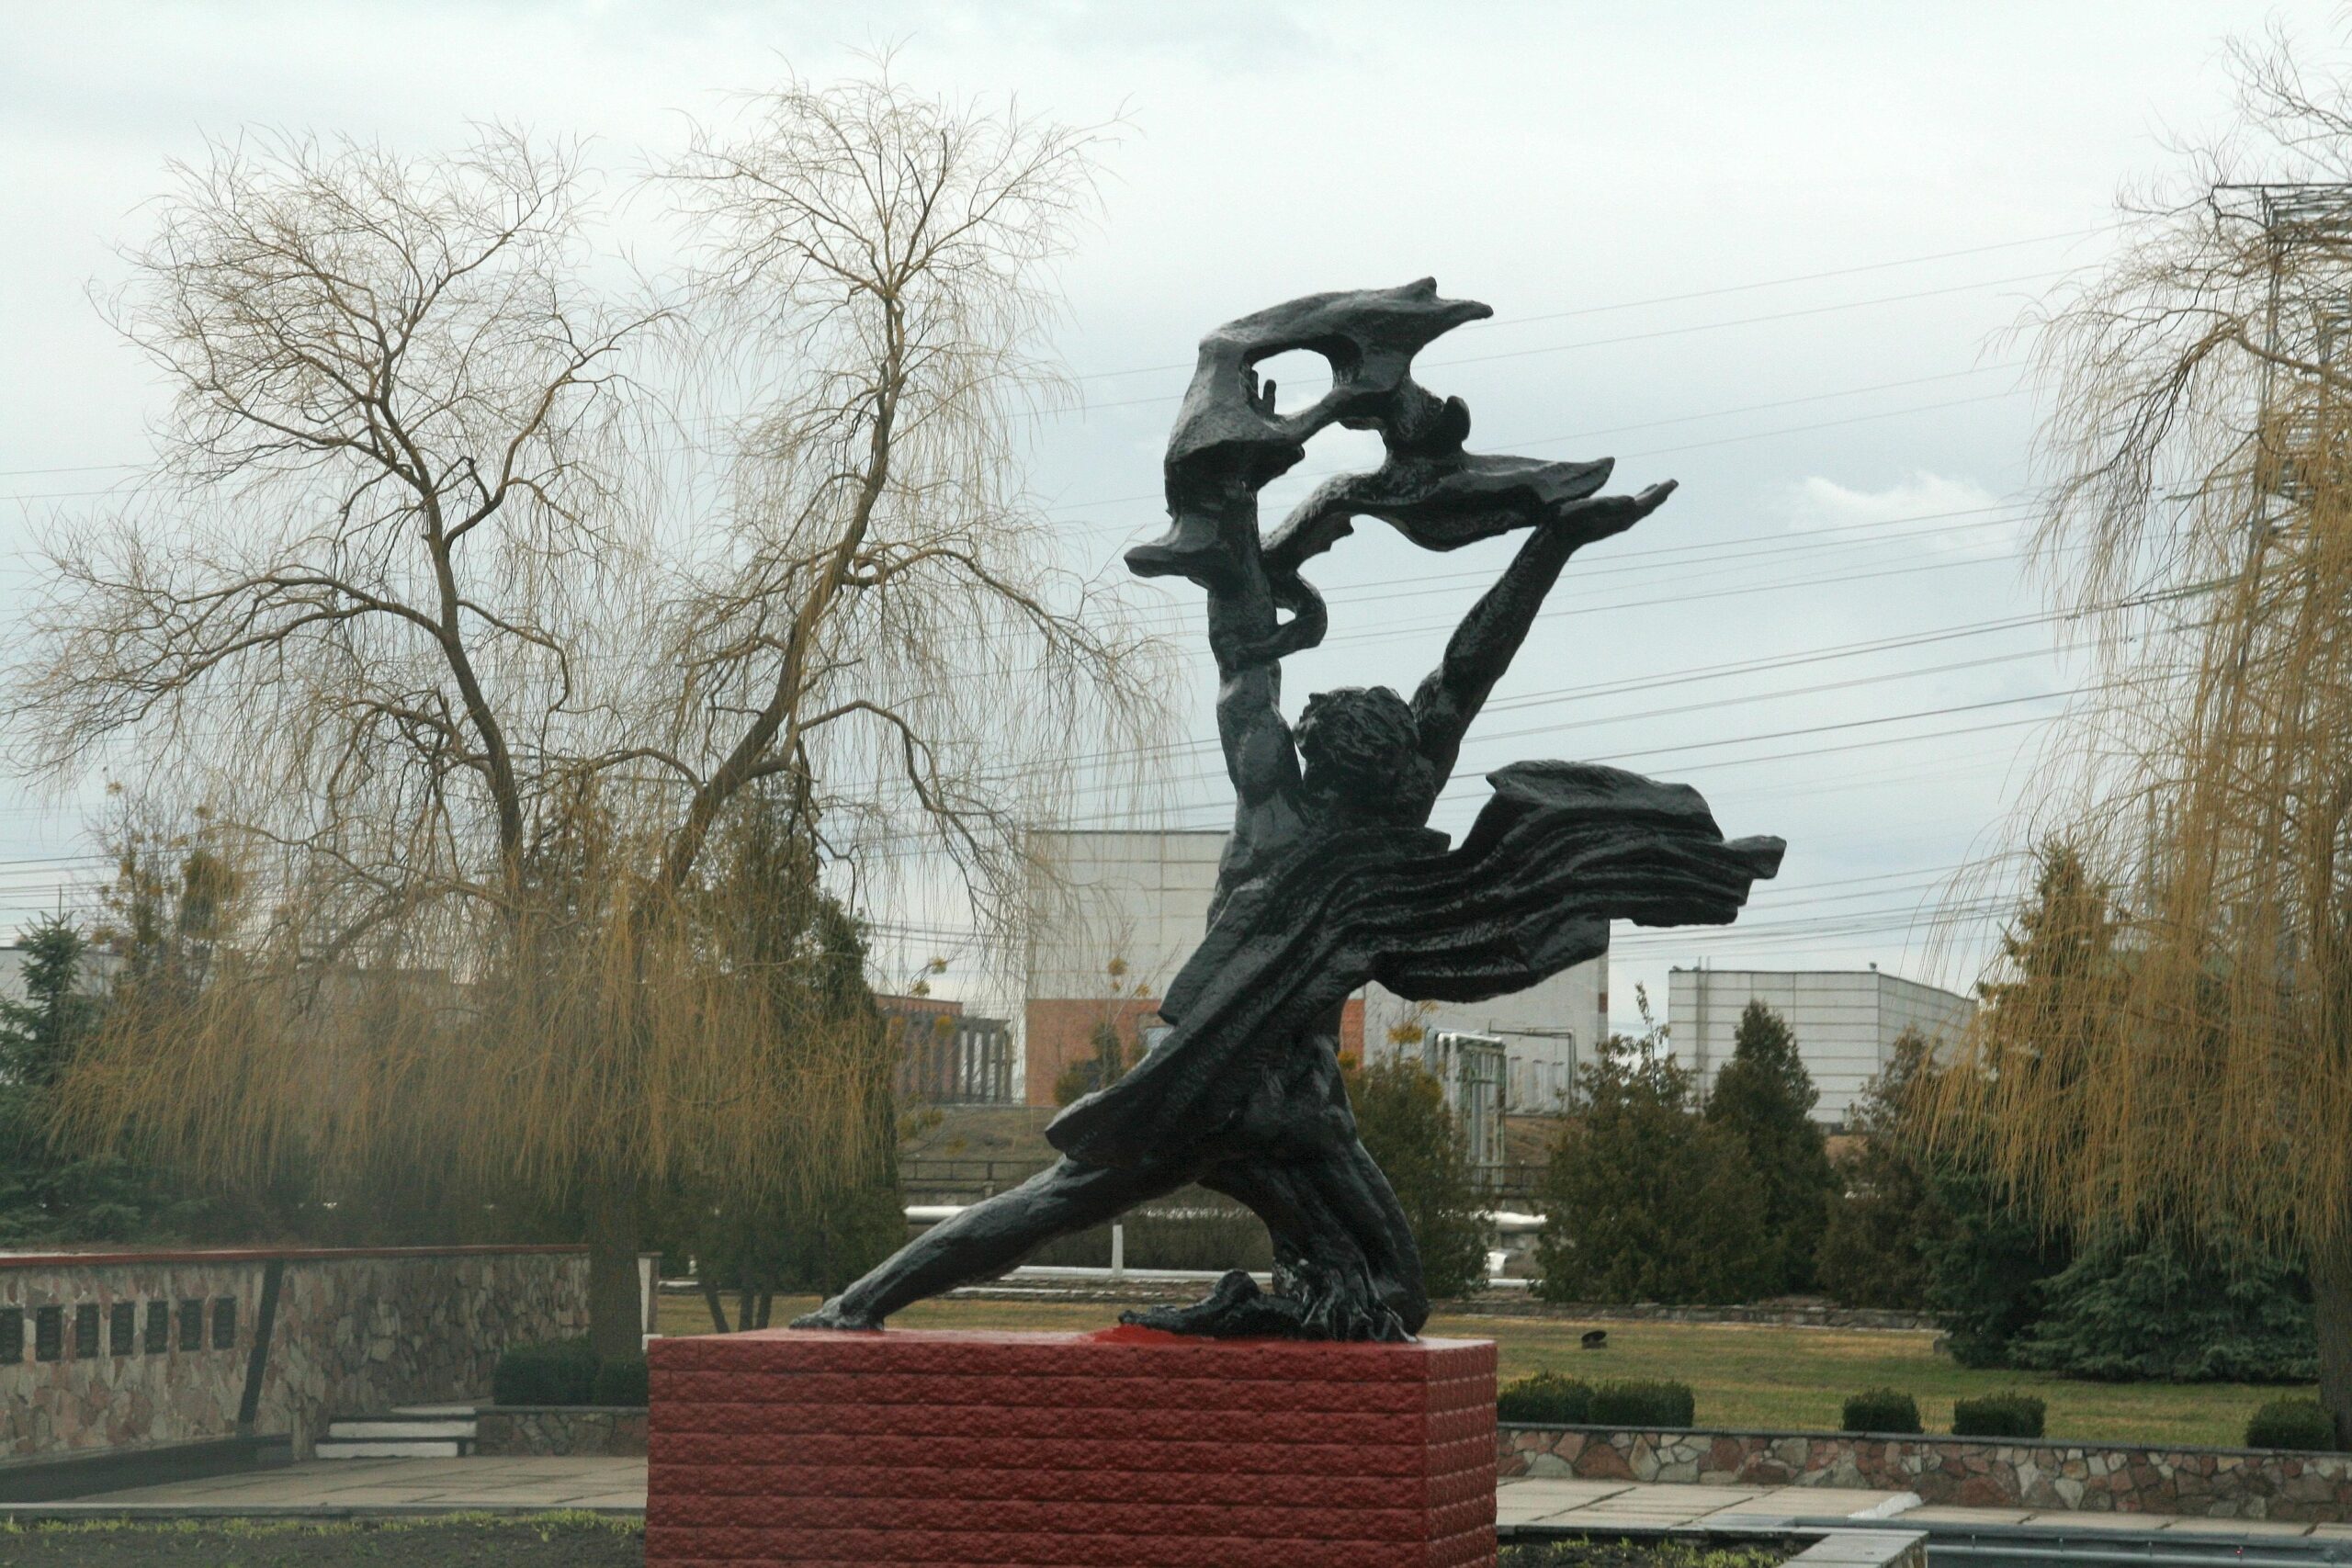 25 Jahre nach dem Unglück: Besuch in der Sperrzone von Tschernobyl.Prometheus bringt den Menschen das Feuer - Statue vor dem Unglücksreaktor von Tschernobyl.